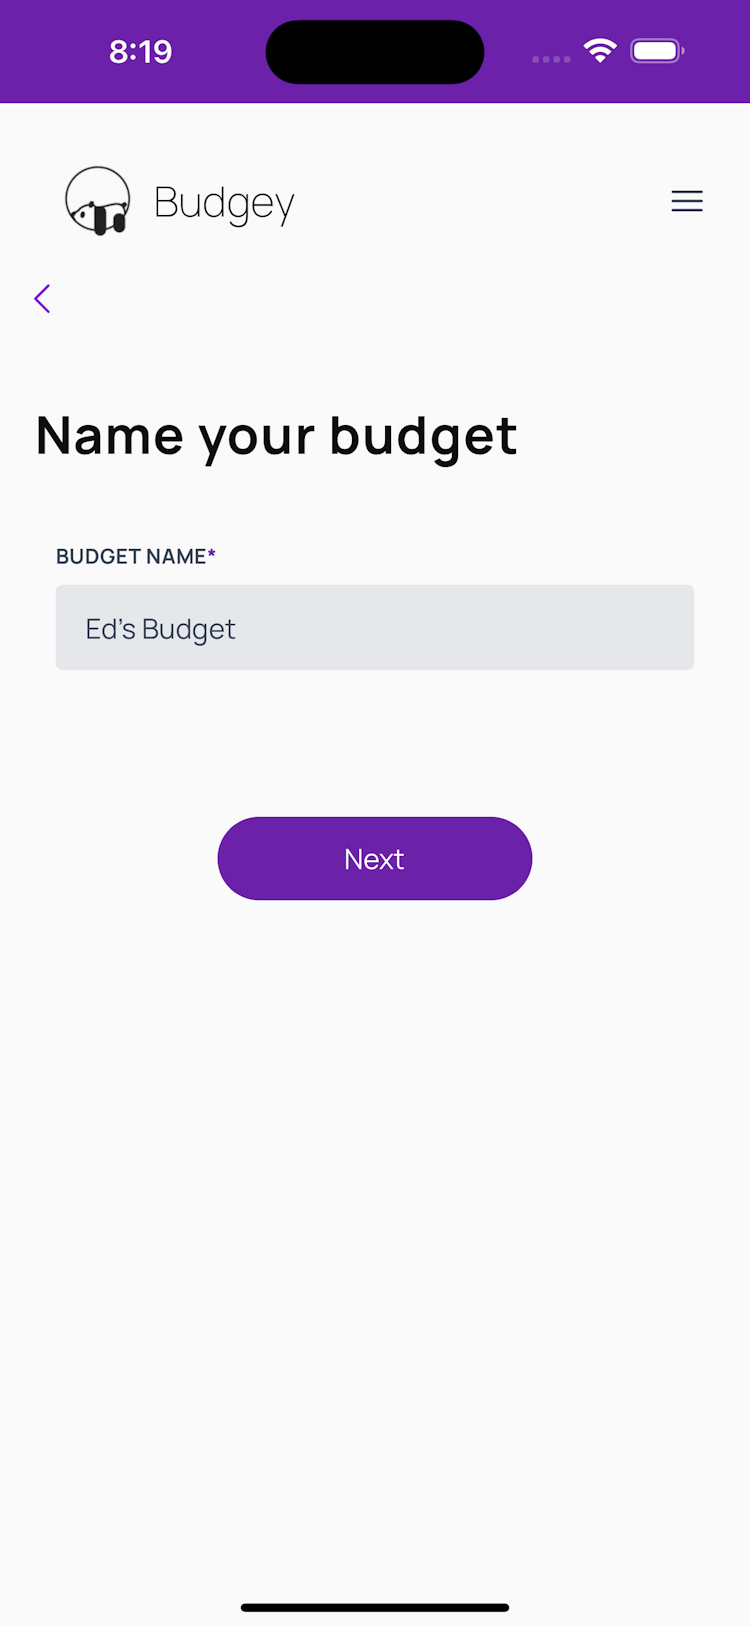 Budget name screen